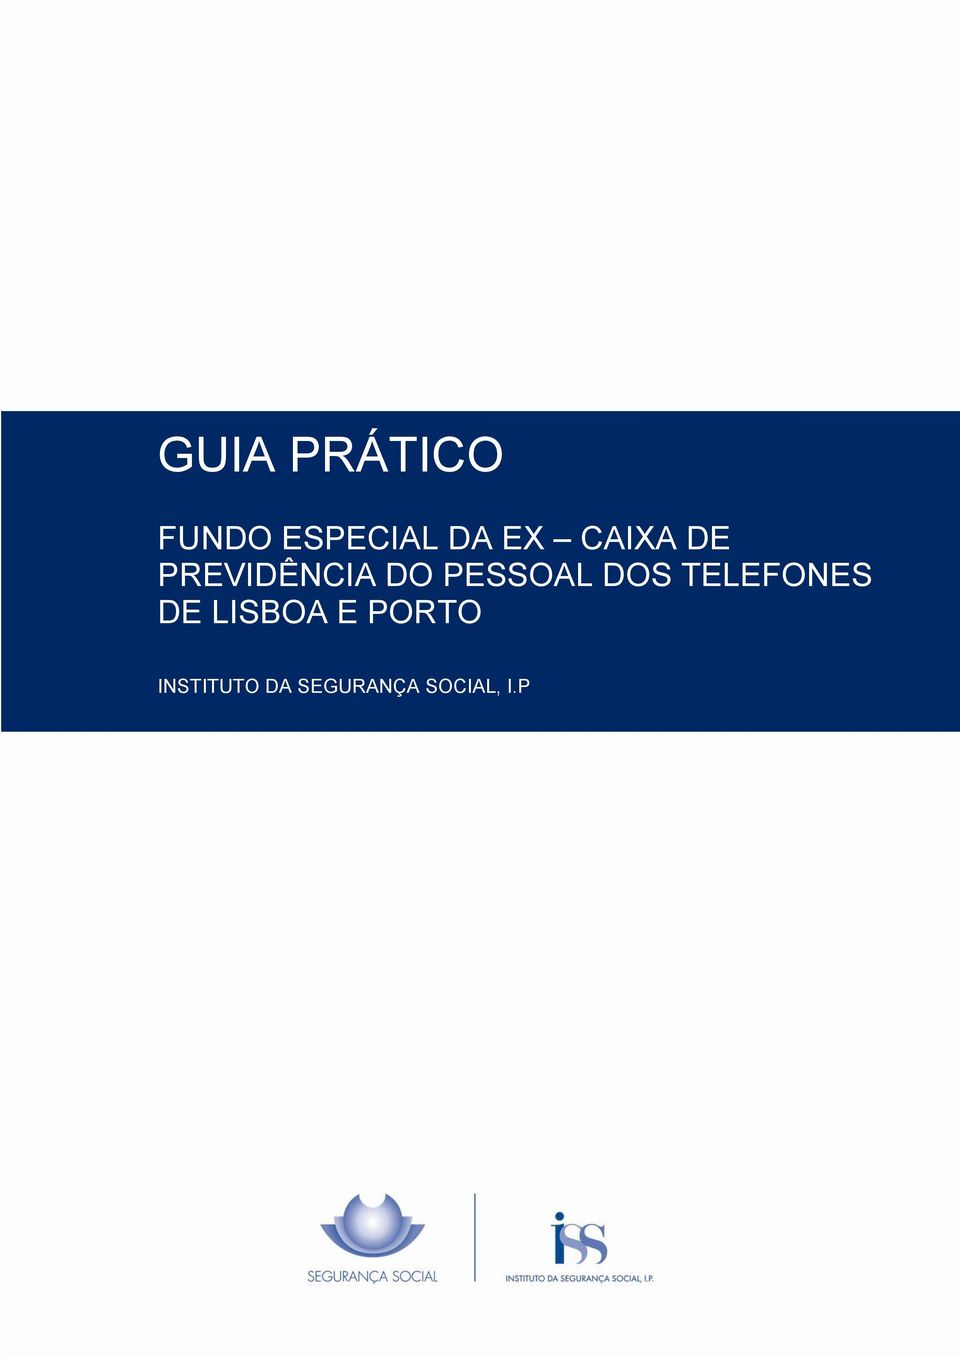 DOS TELEFONES DE LISBOA E PORTO INSTITUTO DA SEGURANÇA SOCIAL, I.